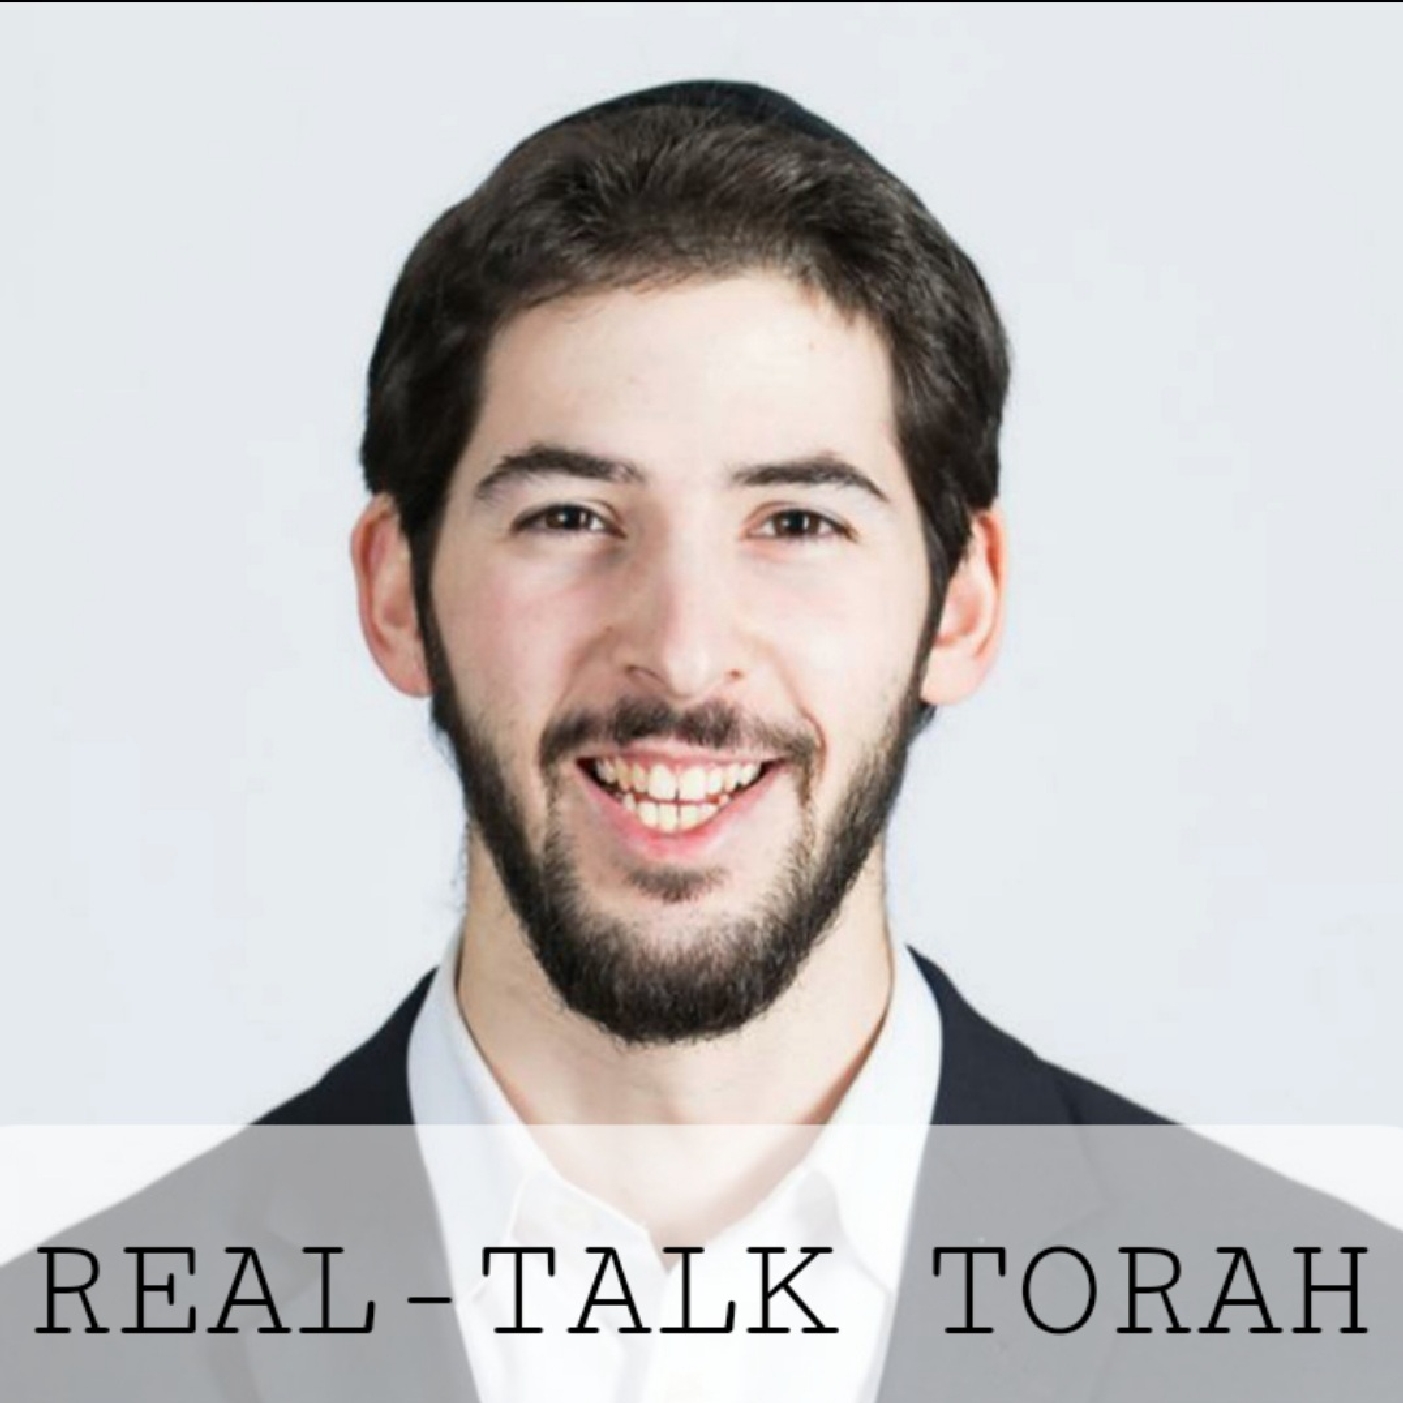 Real-Talk Torah: Why is Rosh Chodesh a 